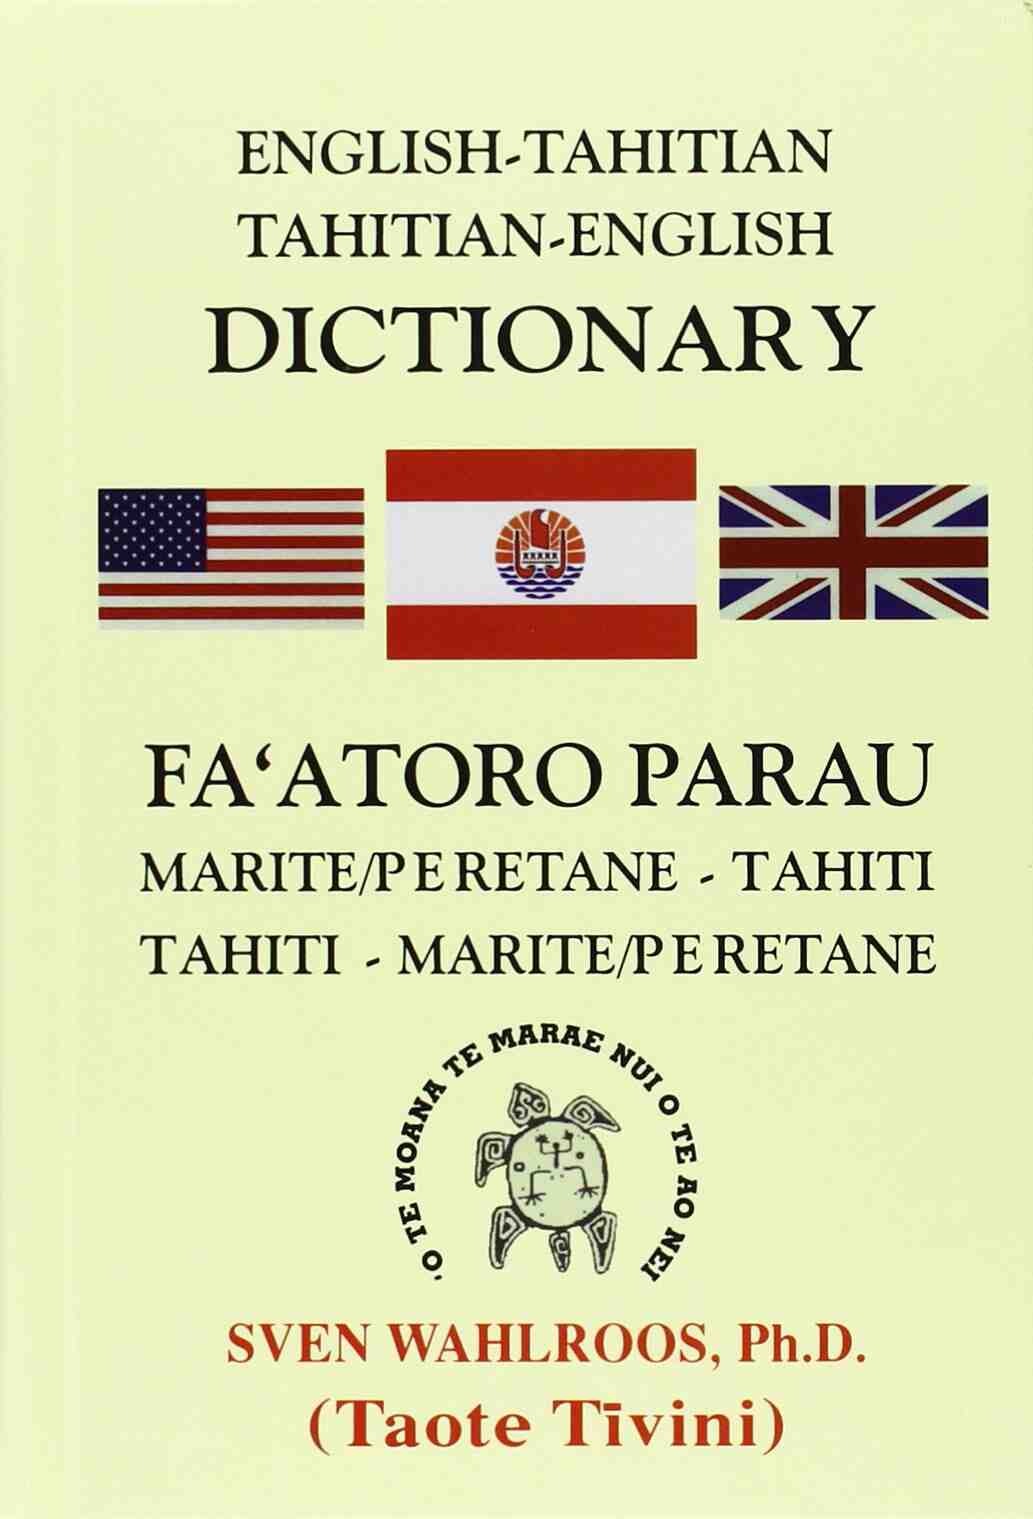 Bildgalleri 4: Vilket språk talas på Tahiti?